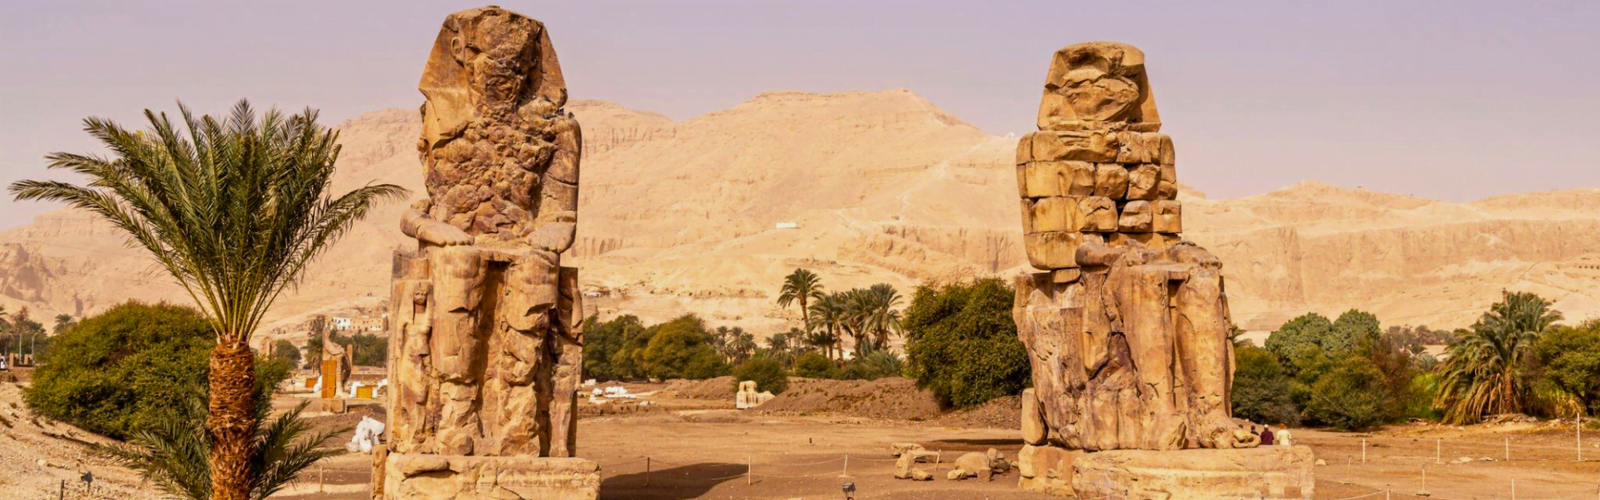 the Majestic Colossi of Memnon in Luxor